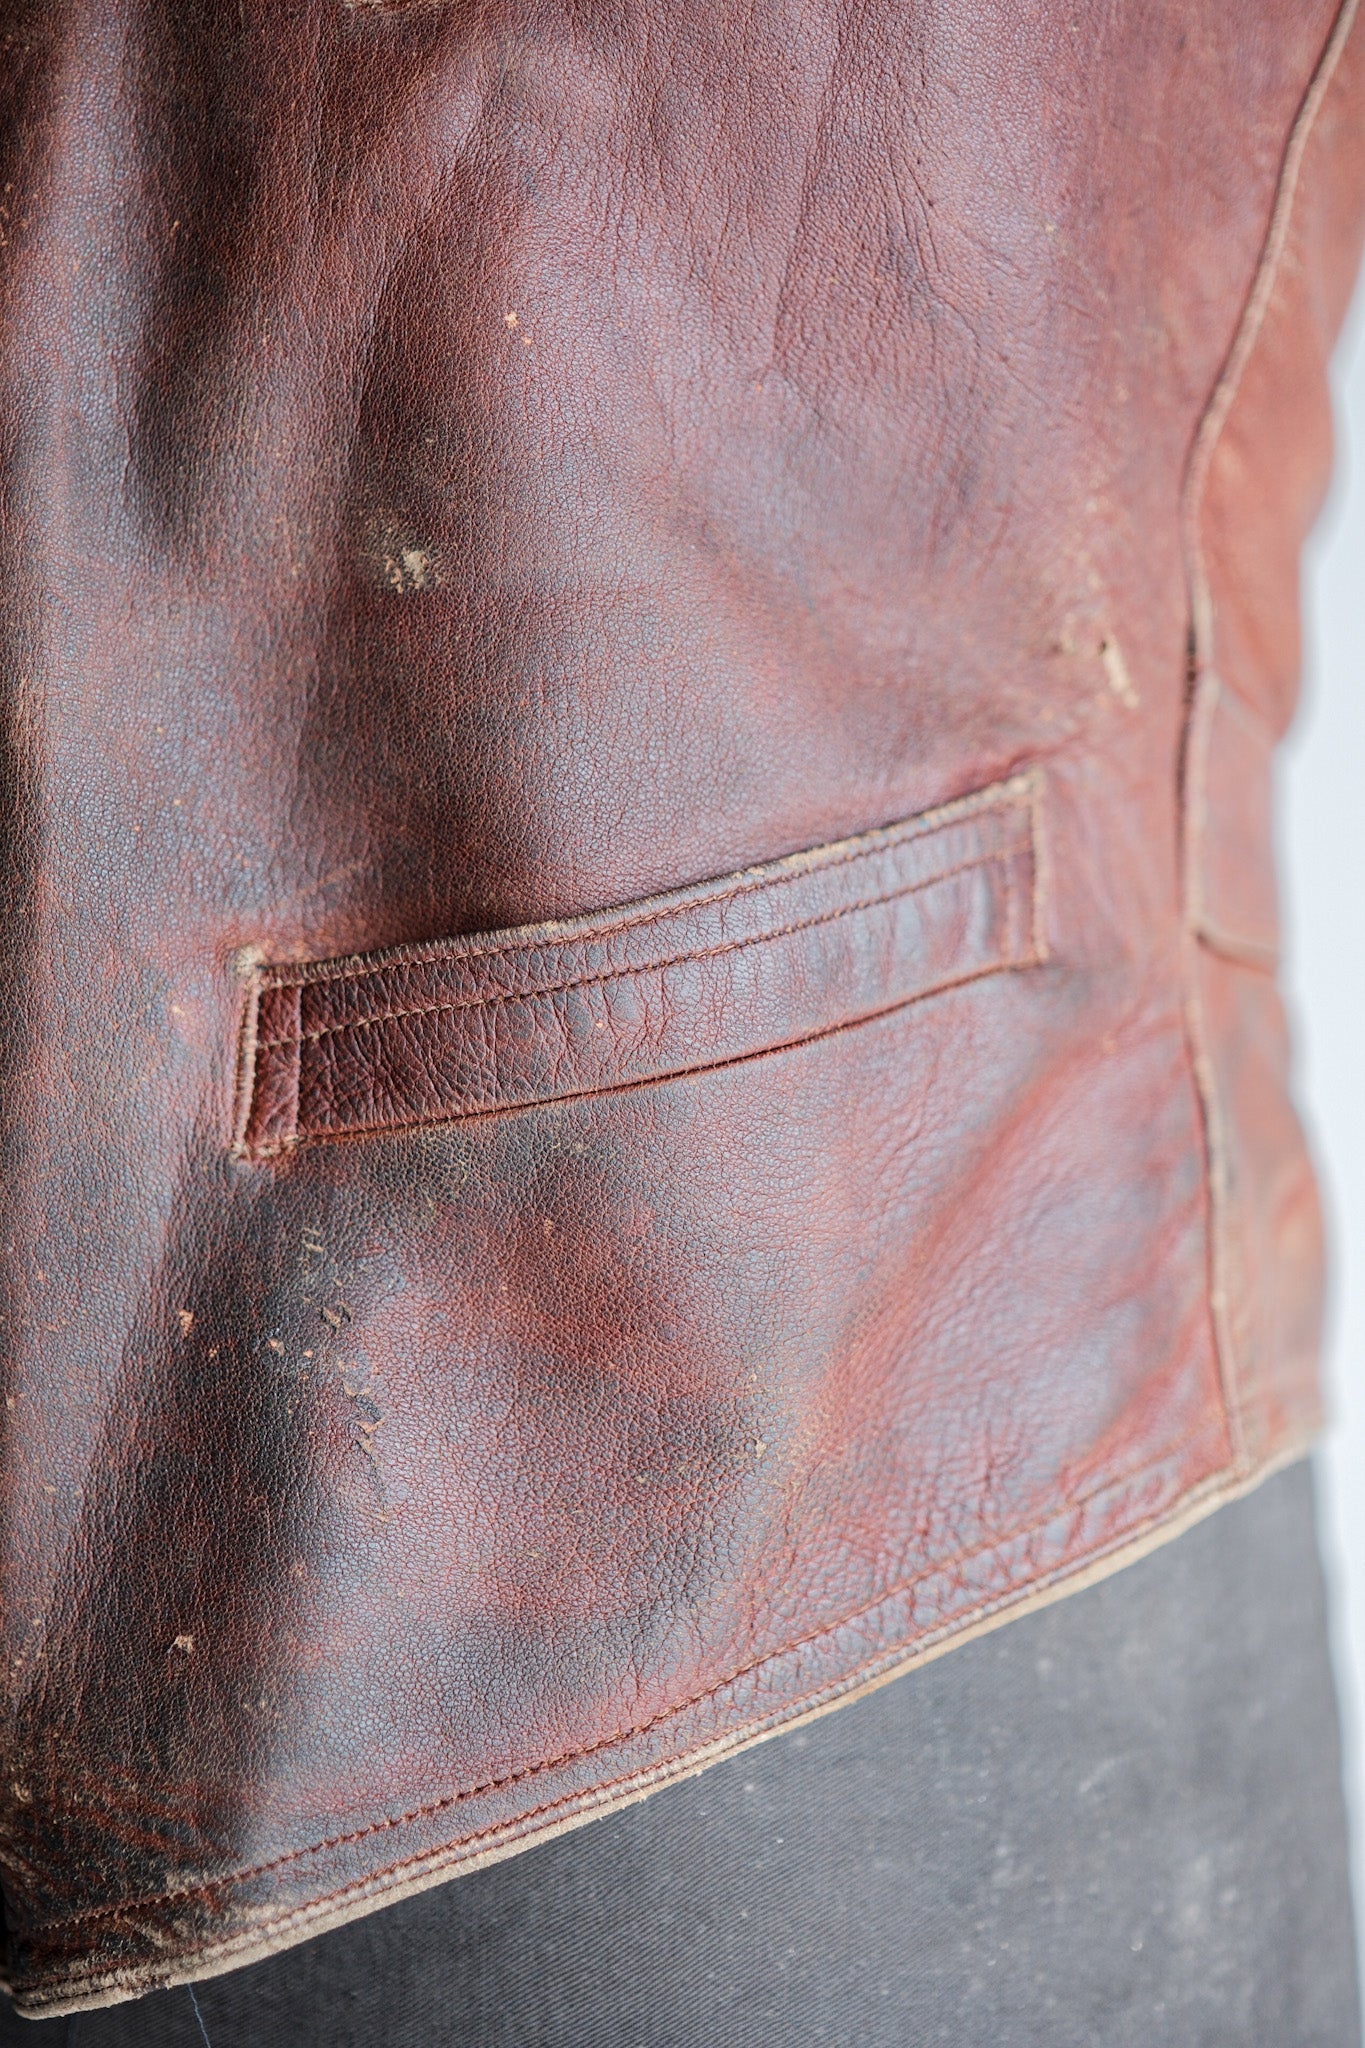 [〜50年代]法國復古棕色皮革工作吉列